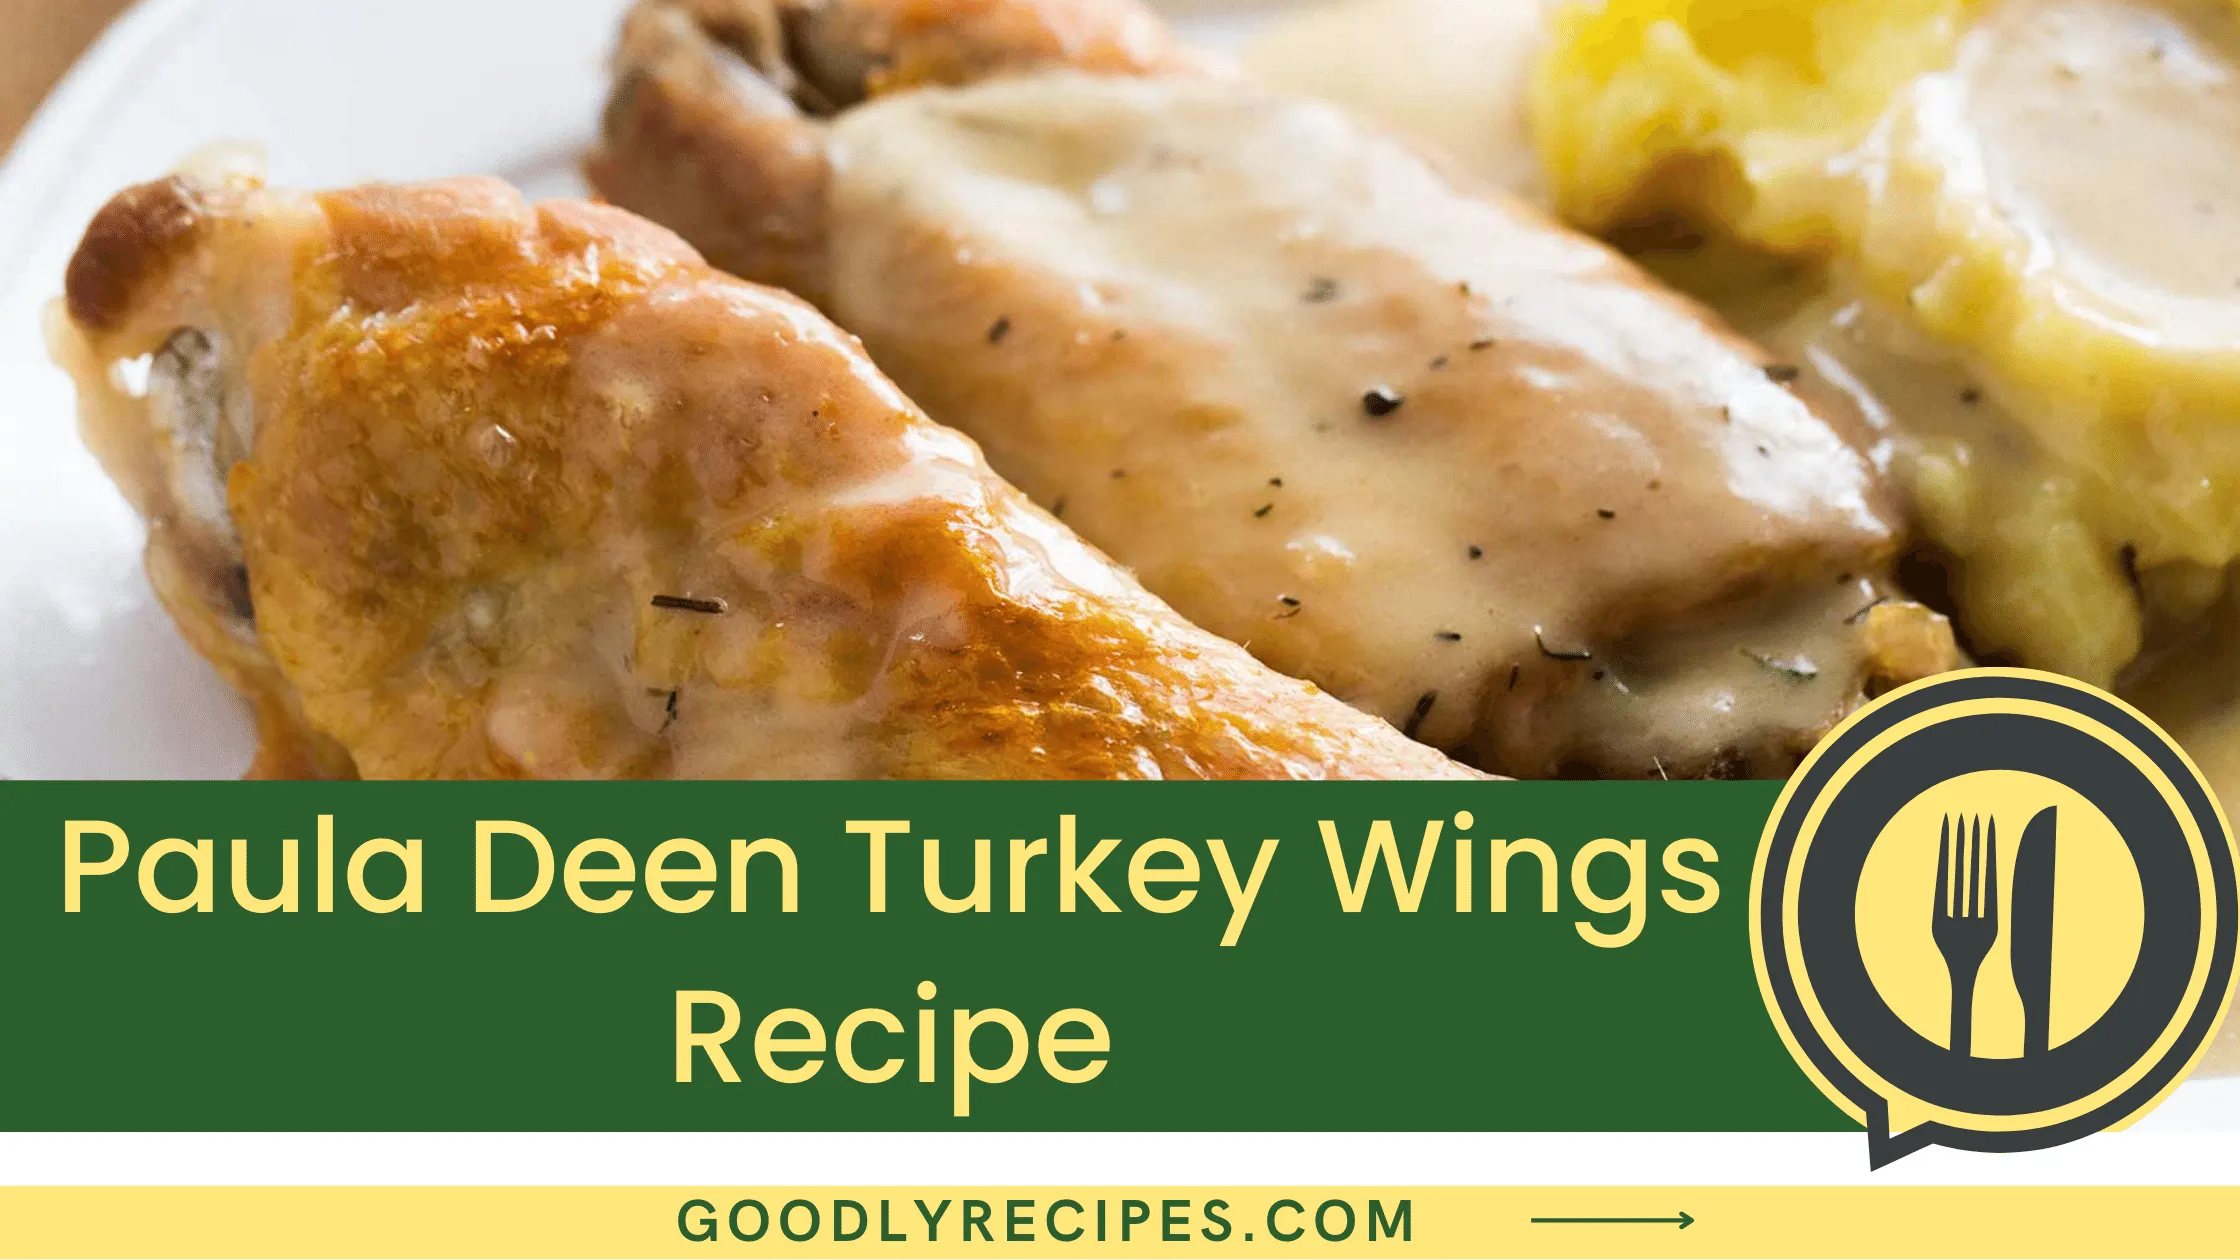 Paula Deen Turkey Wings Recipe